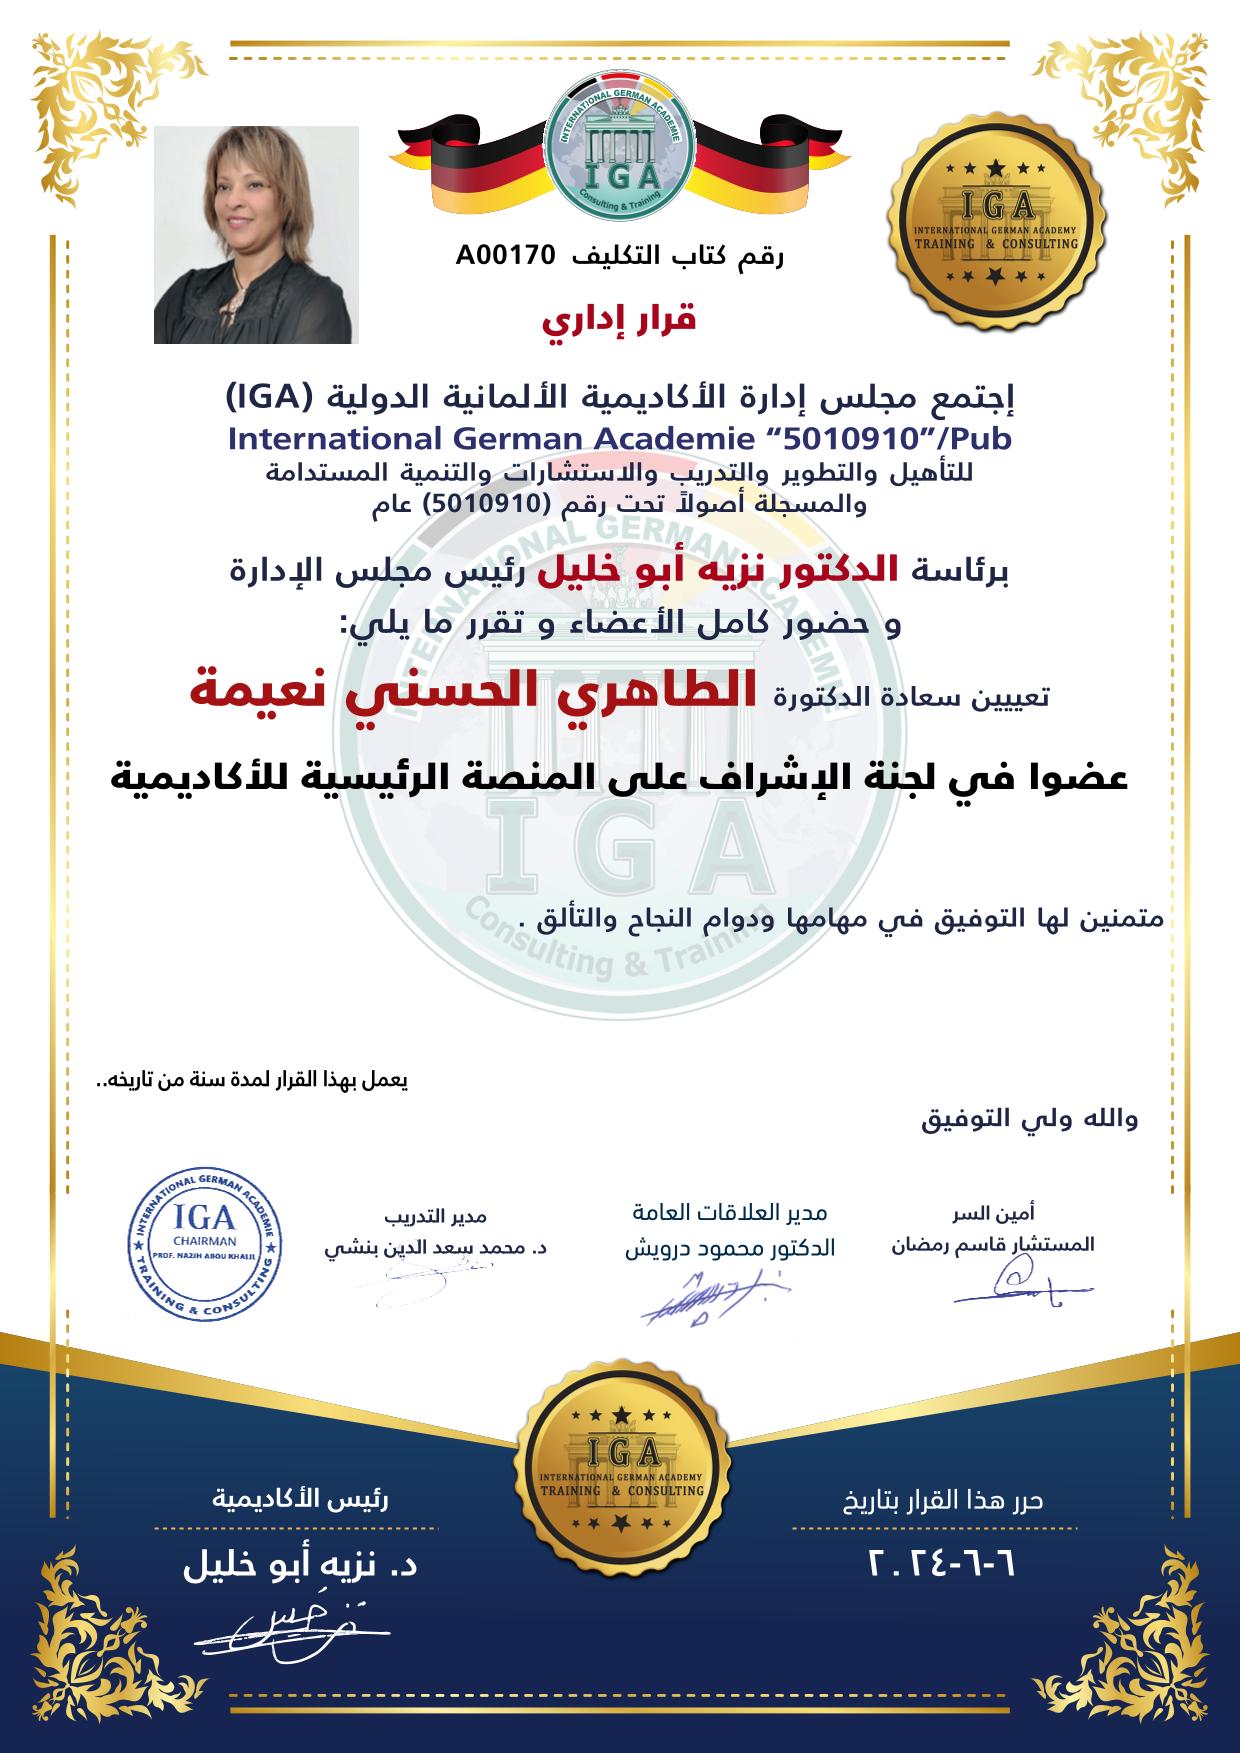 قرار بتعيين الدكتورة الطاهري الحسني نعيمة عضوا في الاشراف على المنصة الرئيسية للأكاديمية